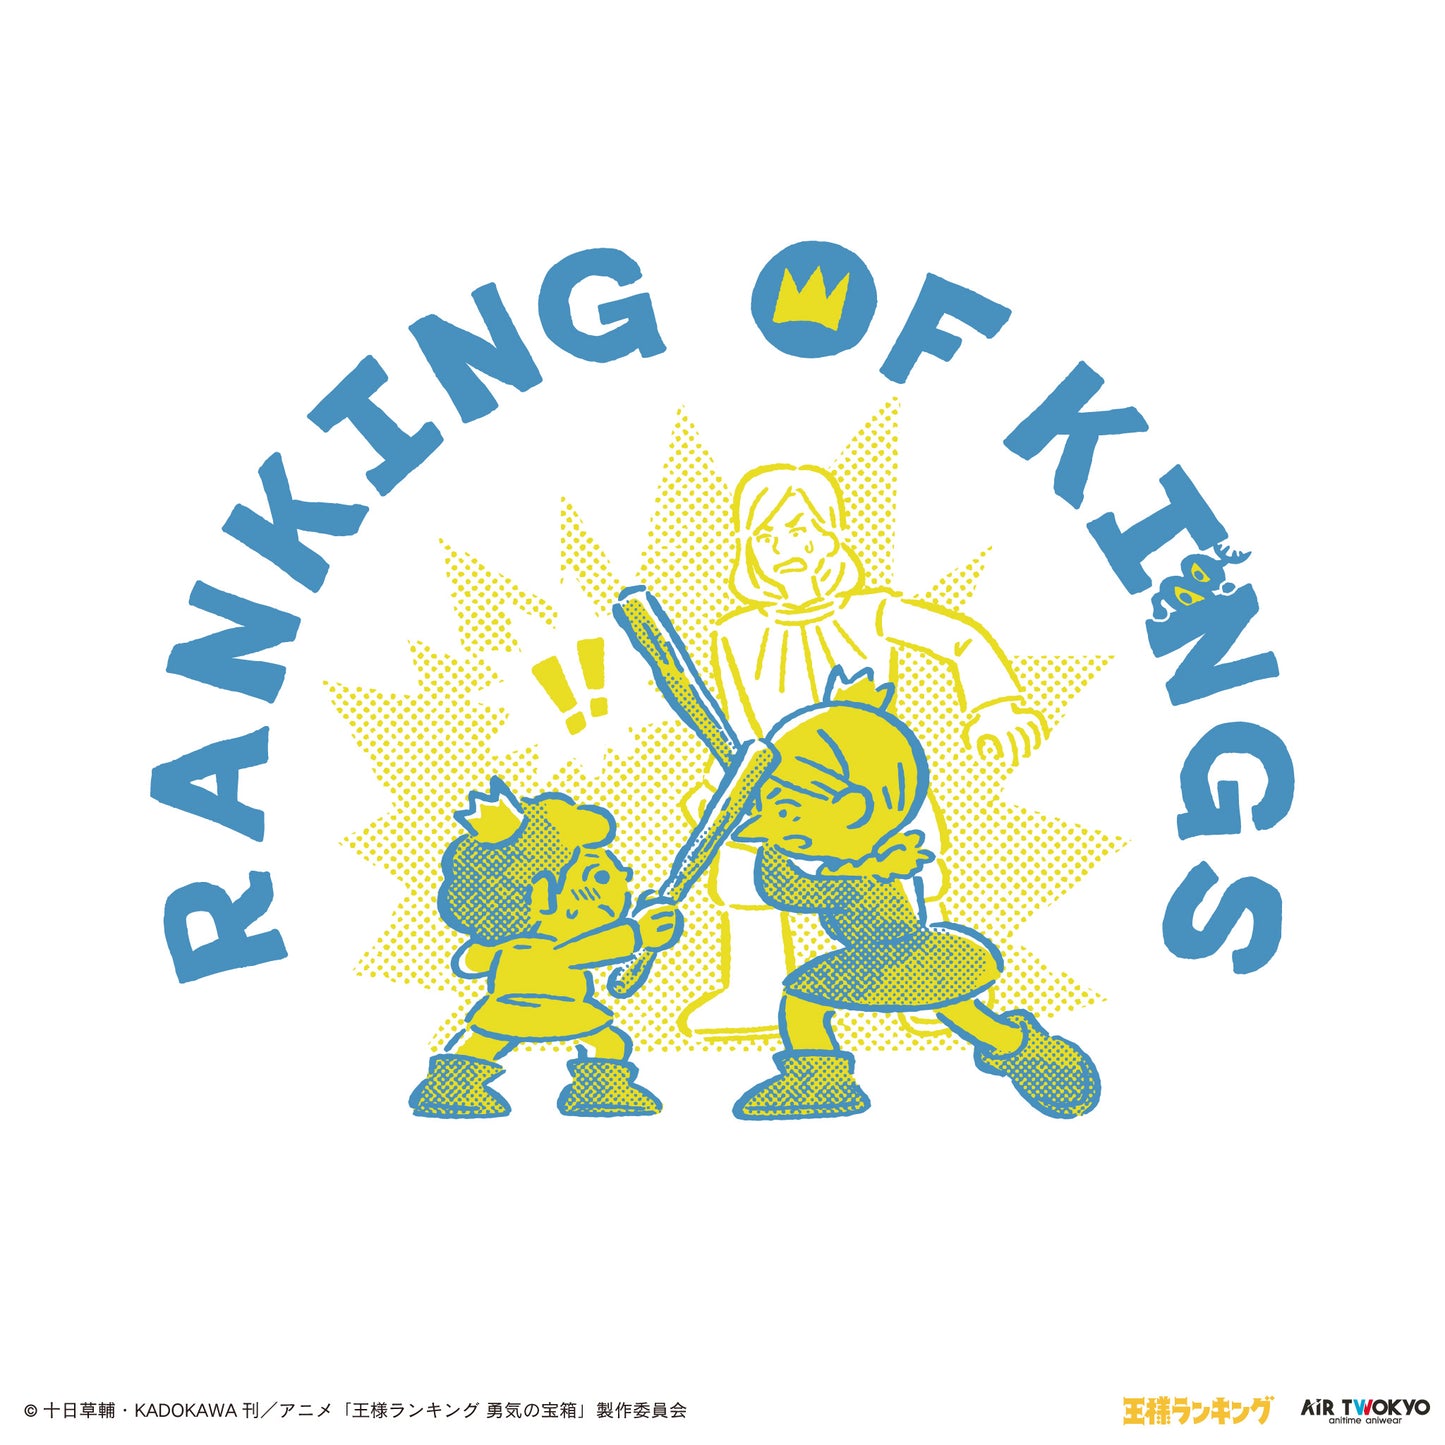 “Ranking of Kings" Scene illustration T-shirt 1